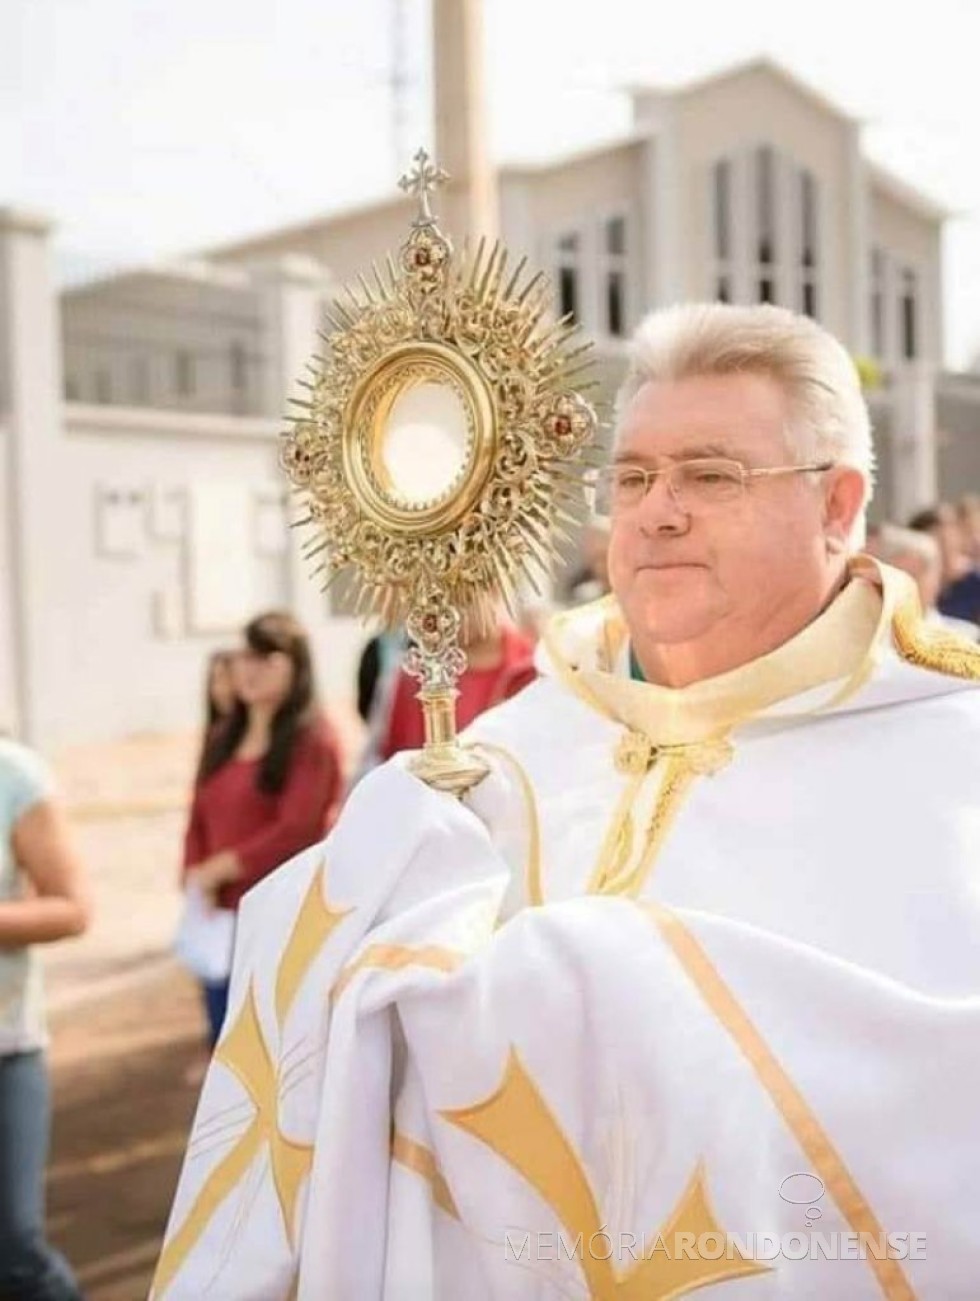 Padre diocesano Adair Bennemann, vigário da Paróquia Santa Rosa de Lima, de Nova Santa Rosa, falecido em começo de junho de 2021. 
Imagem: Acervo Diocese de Toledo (PR) - FOTO 15 - 
